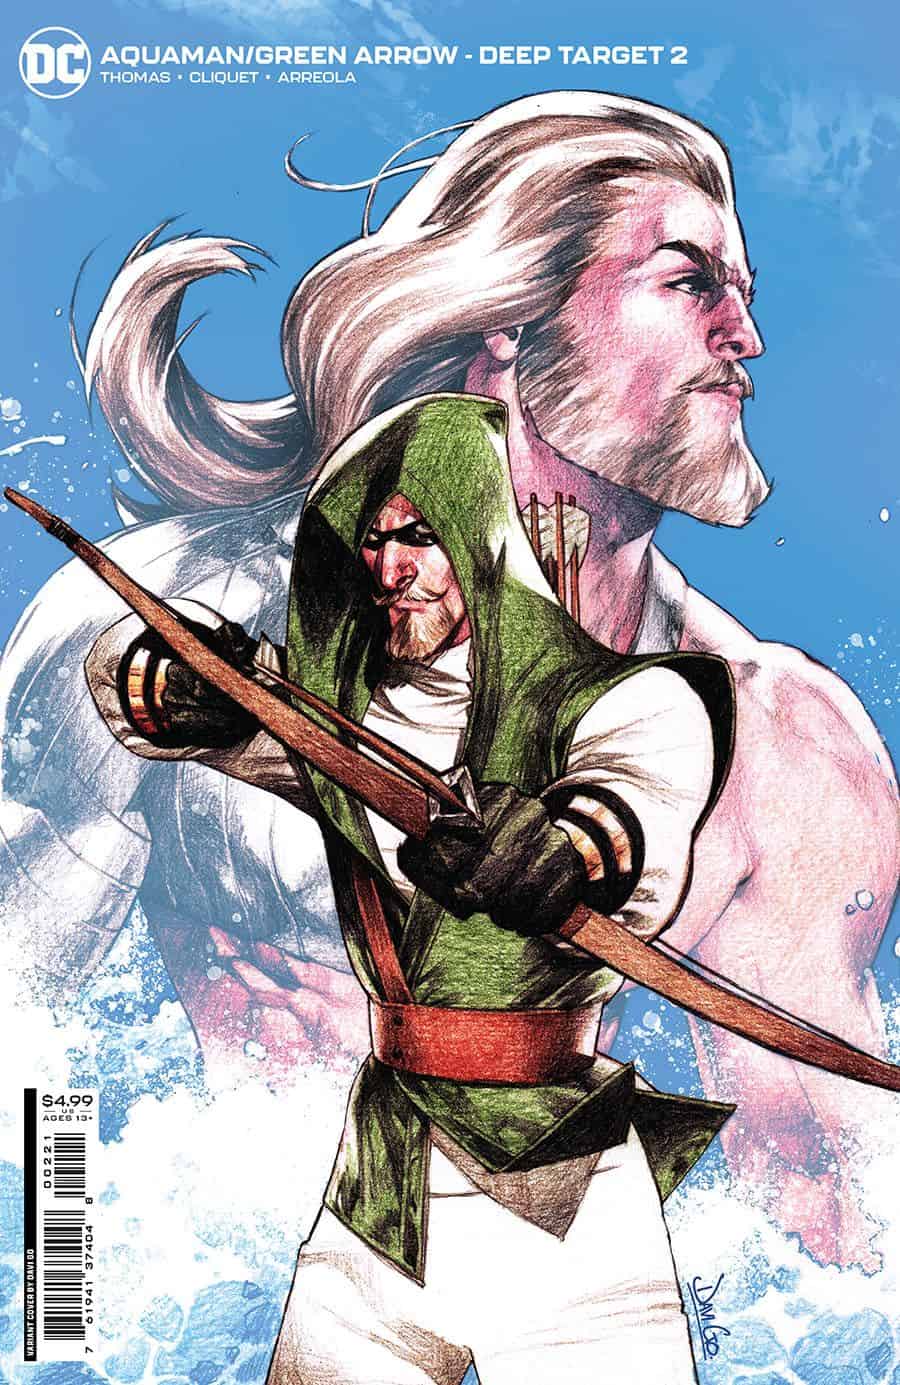 DC Comics & Aquaman / Green Arrow: Deep Target #2 Spoilers: Fight Club?!